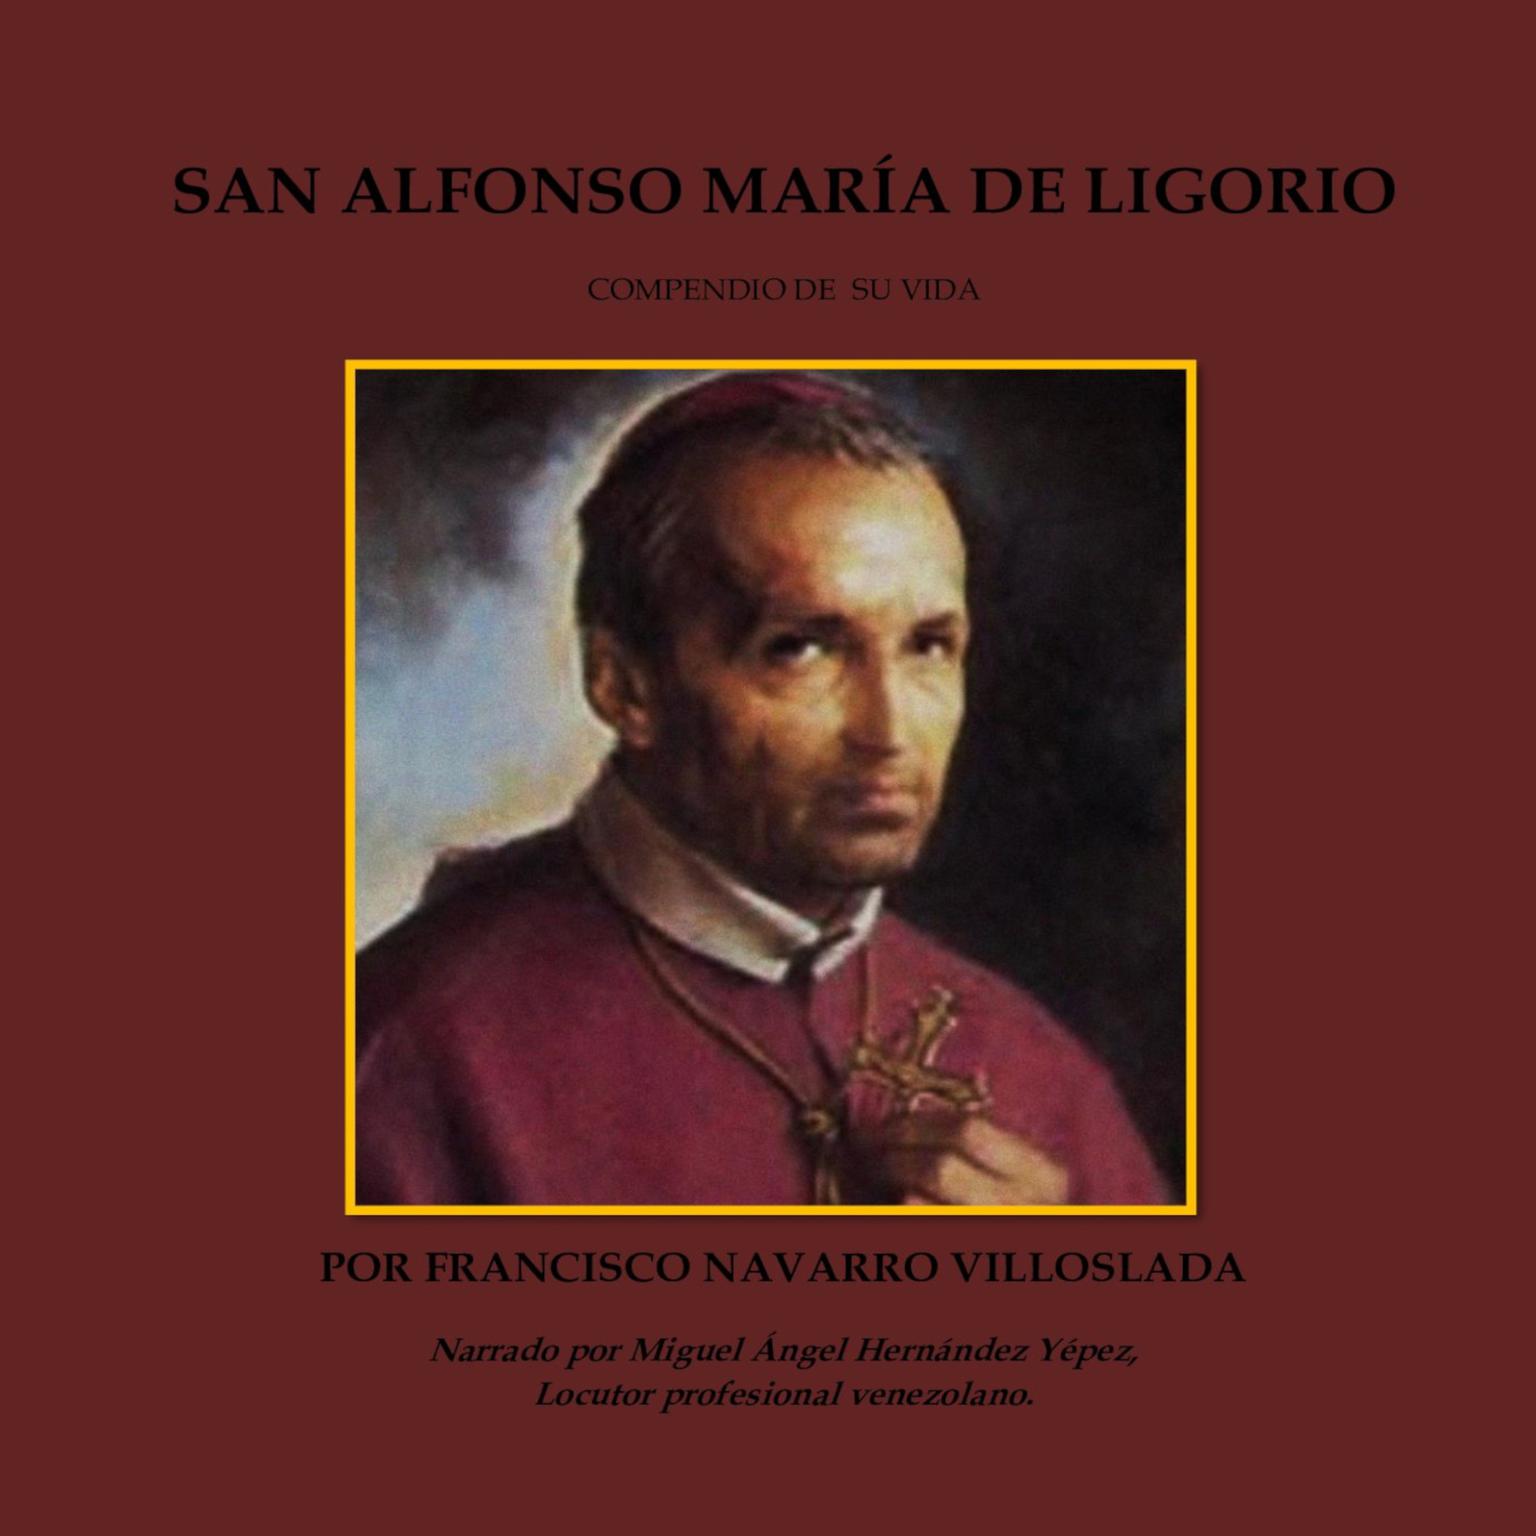 San Alfonse María de Ligorio: Compendio de su vida Audiobook, by Francisco Navarro Villoslada